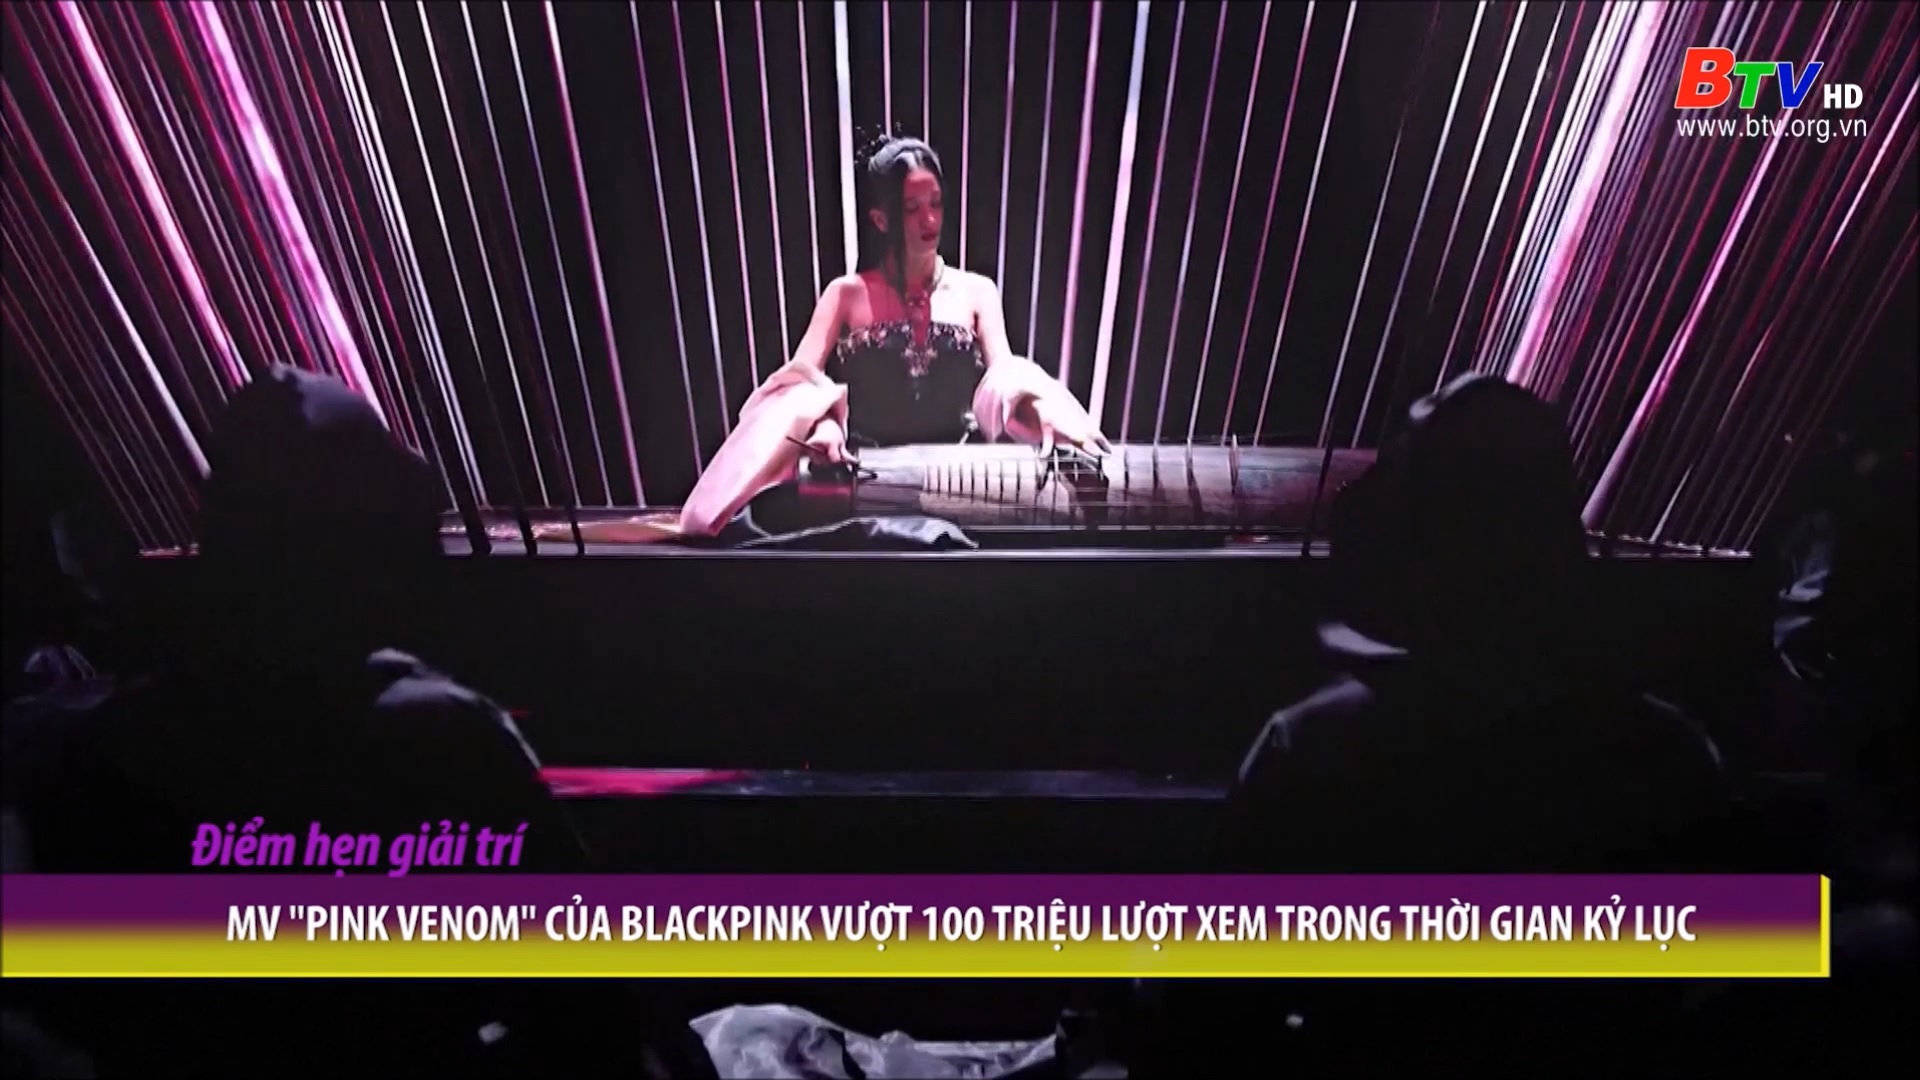 MV “Pink Venom” của Blackpink vượt 100 triệu lượt xem trong thời gian kỷ lục